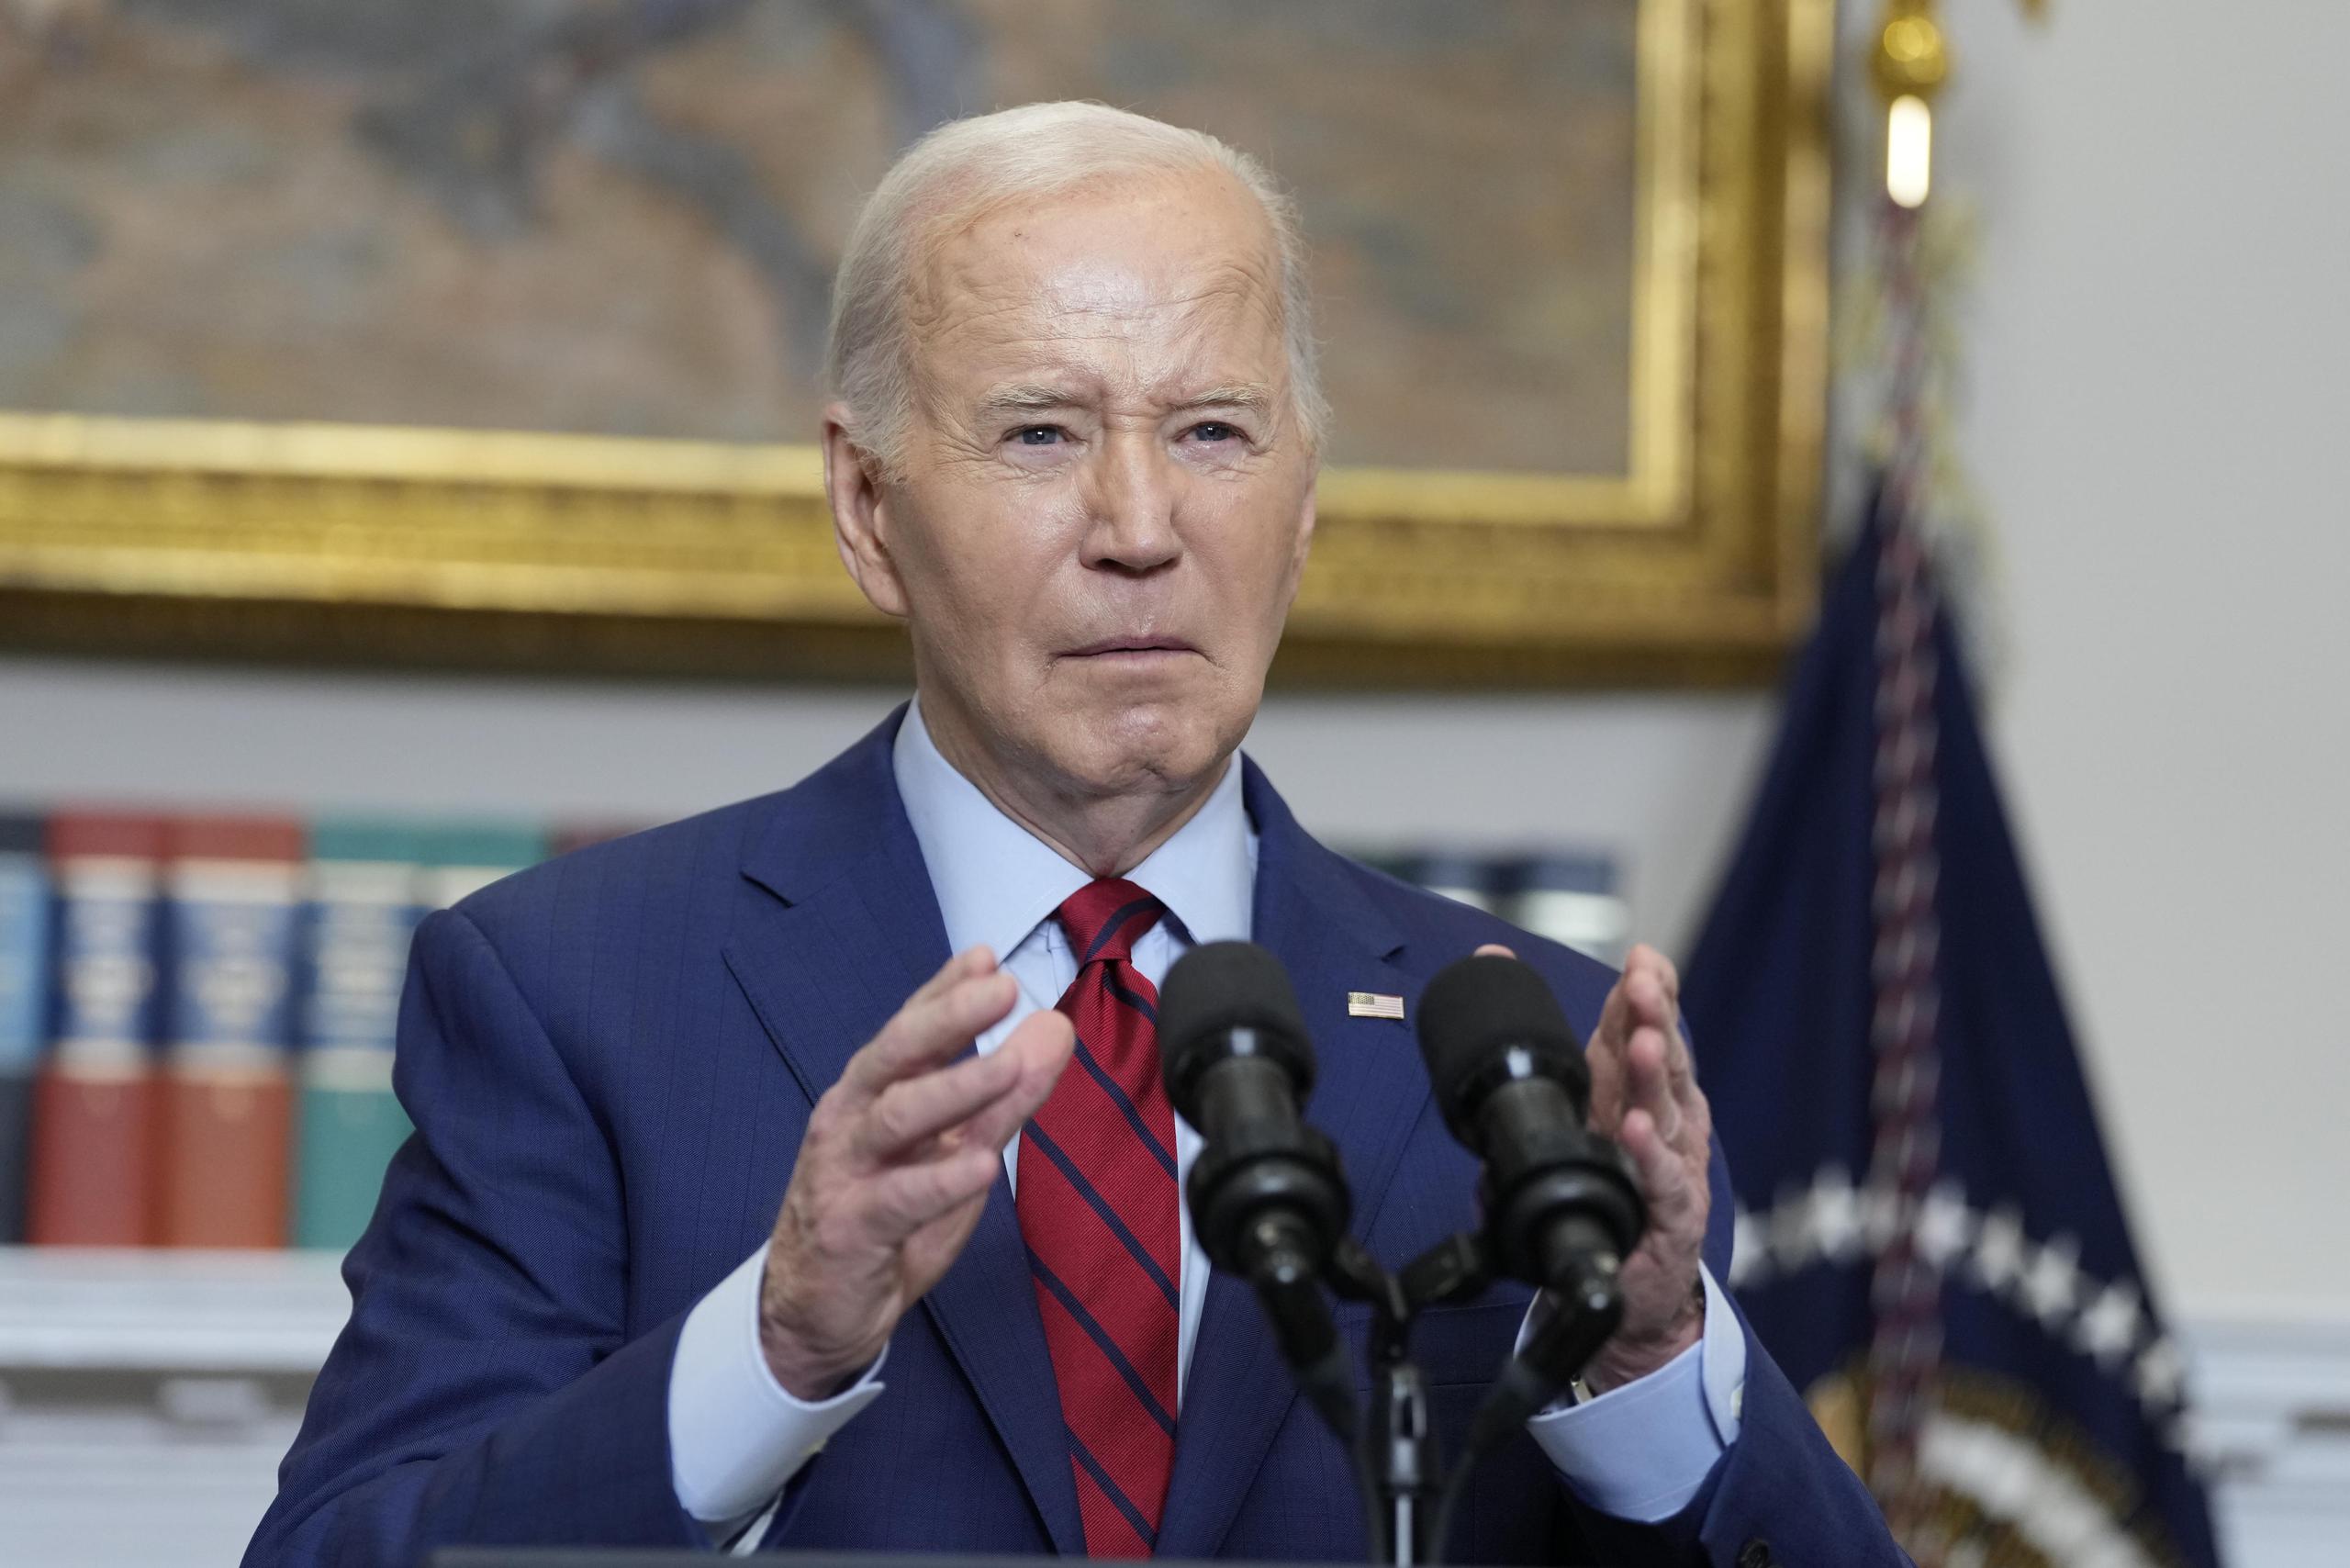 El funcionario recordó que en Estados Unidos se produjo un incidente con unas llamadas que se hacían pasar por el presidente Joe Biden, e instaban a los votantes de New Hampshire a abstenerse en las elecciones primarias de enero.